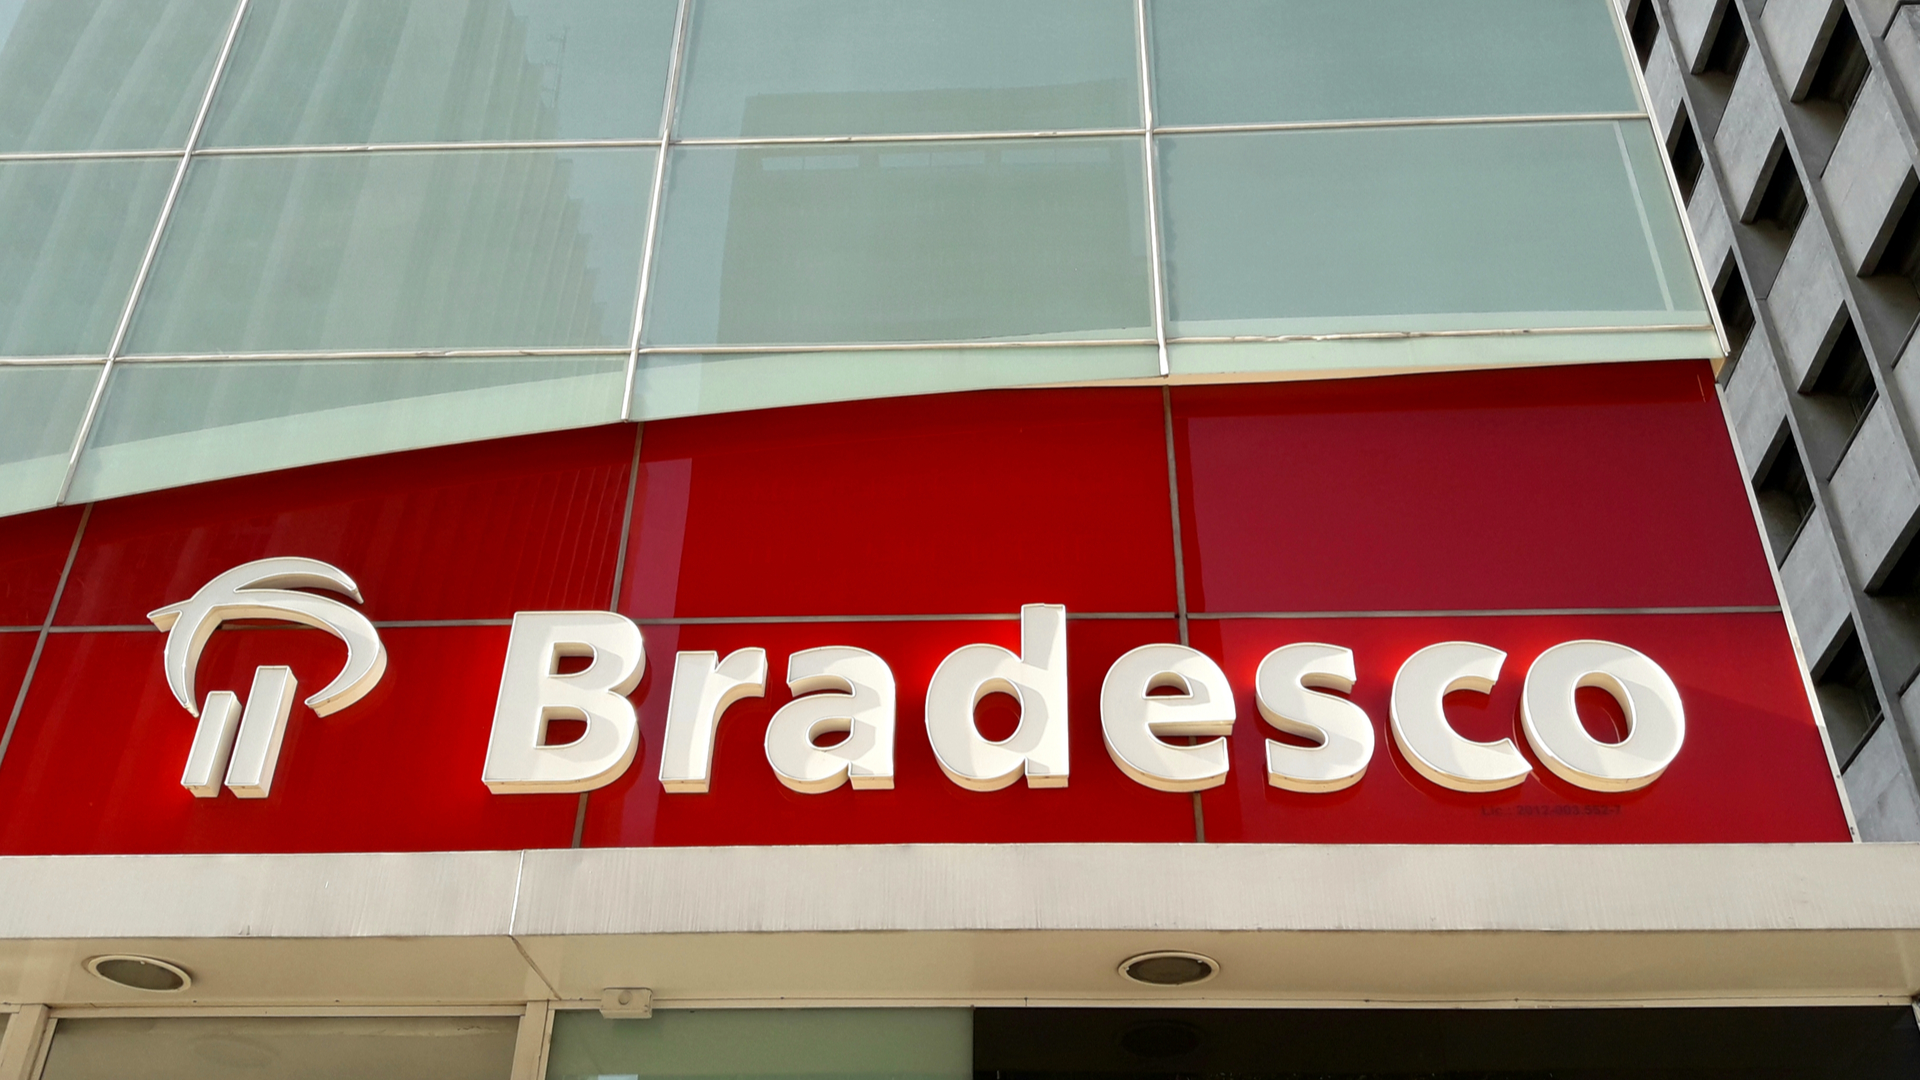 Brezilya Merkezli Banka Bradesco, Blockchain Çalışmalarını Hızlandırdı!